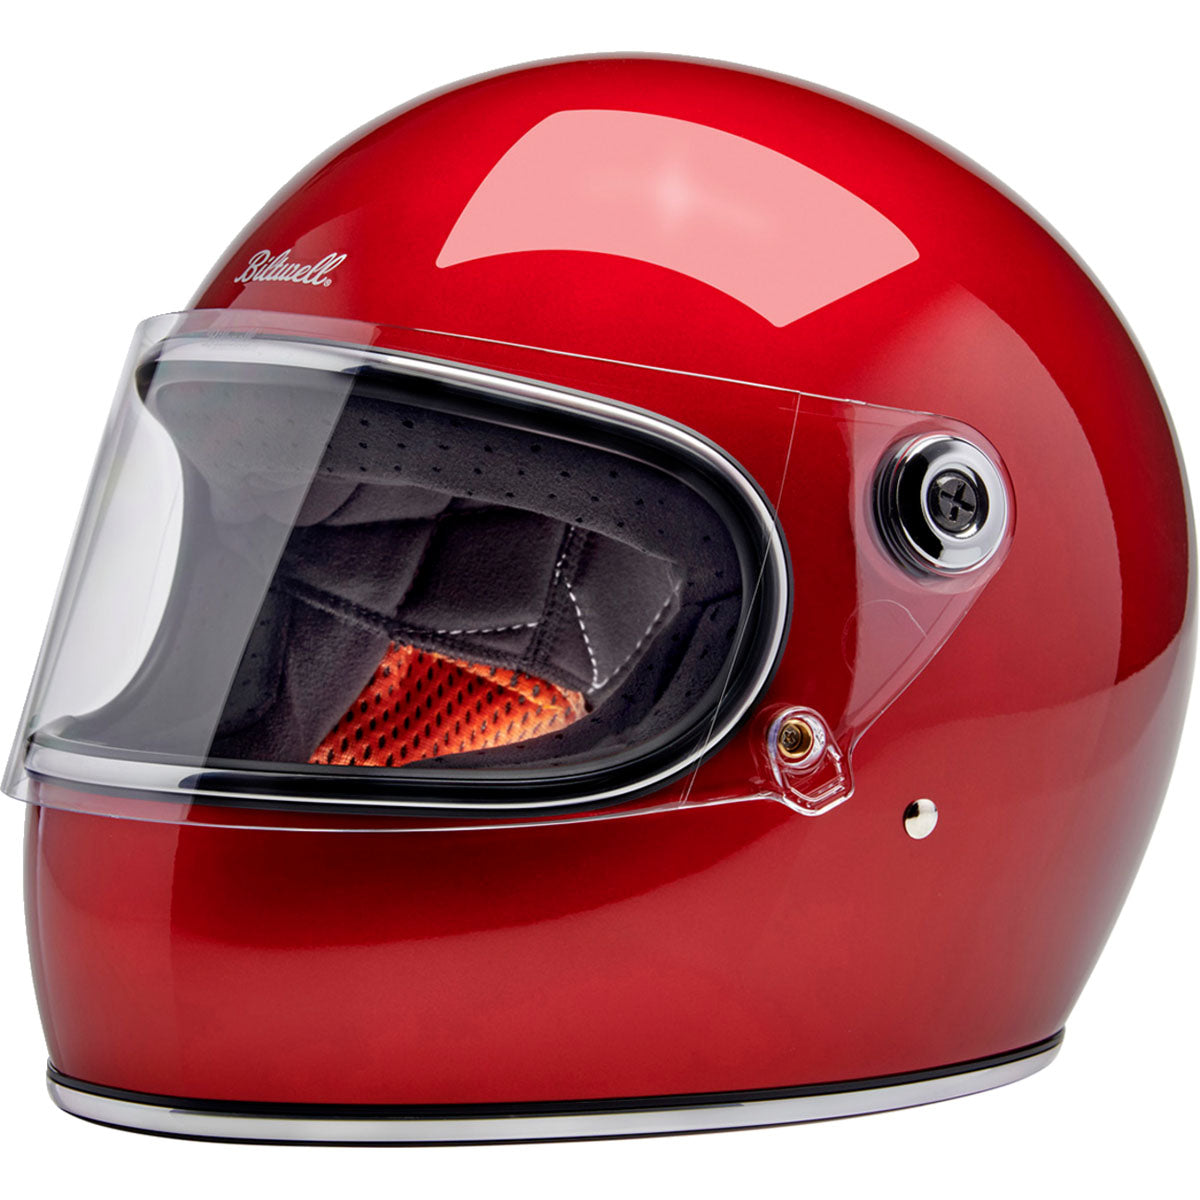 Biltwell Gringo S Helmet - Metallic Cherry Red